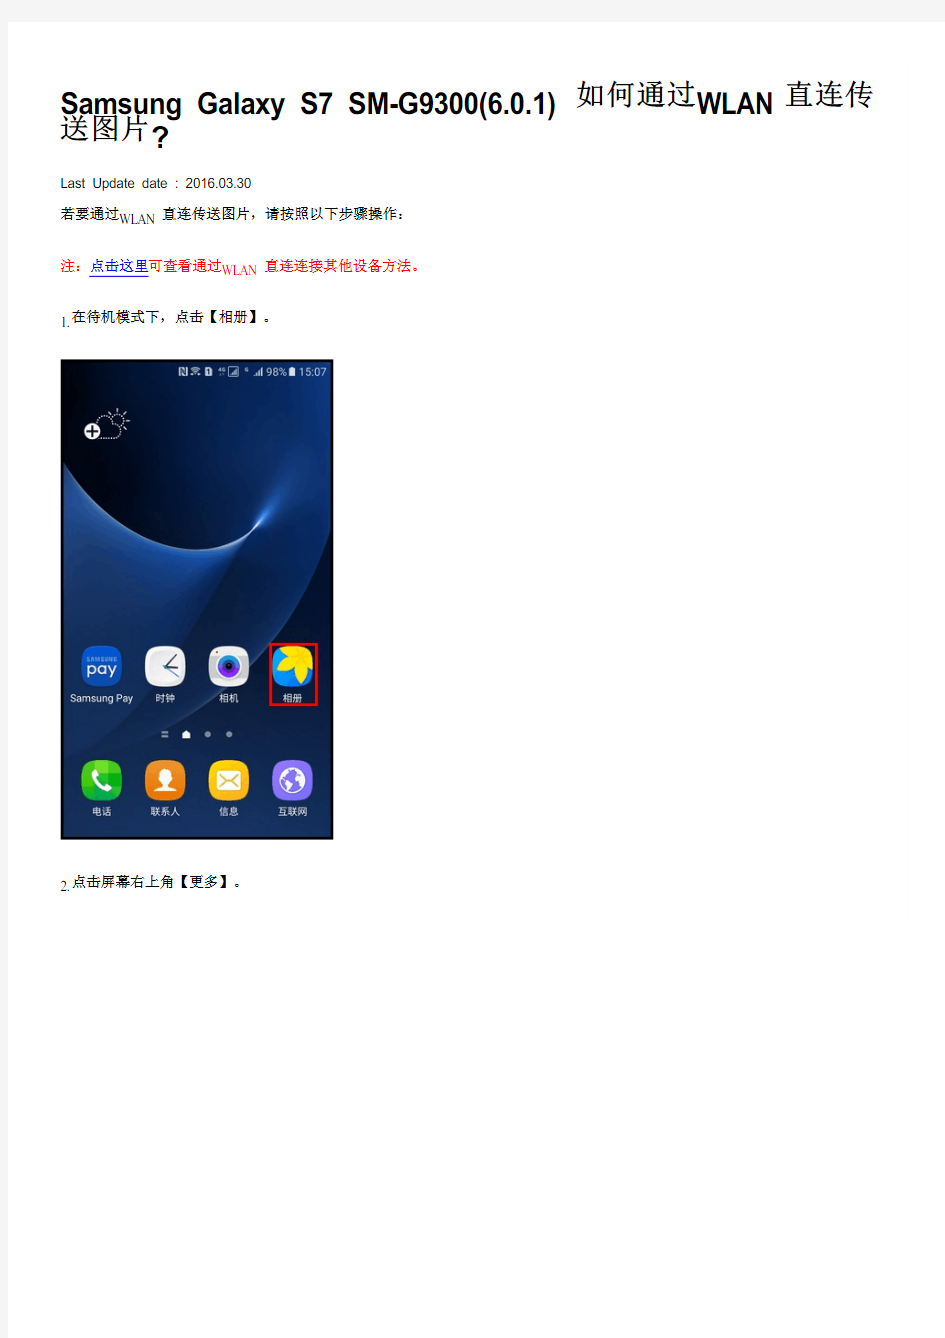 Samsung Galaxy S7 SM-G9300(6.0.1)如何通过WLAN直连传送图片